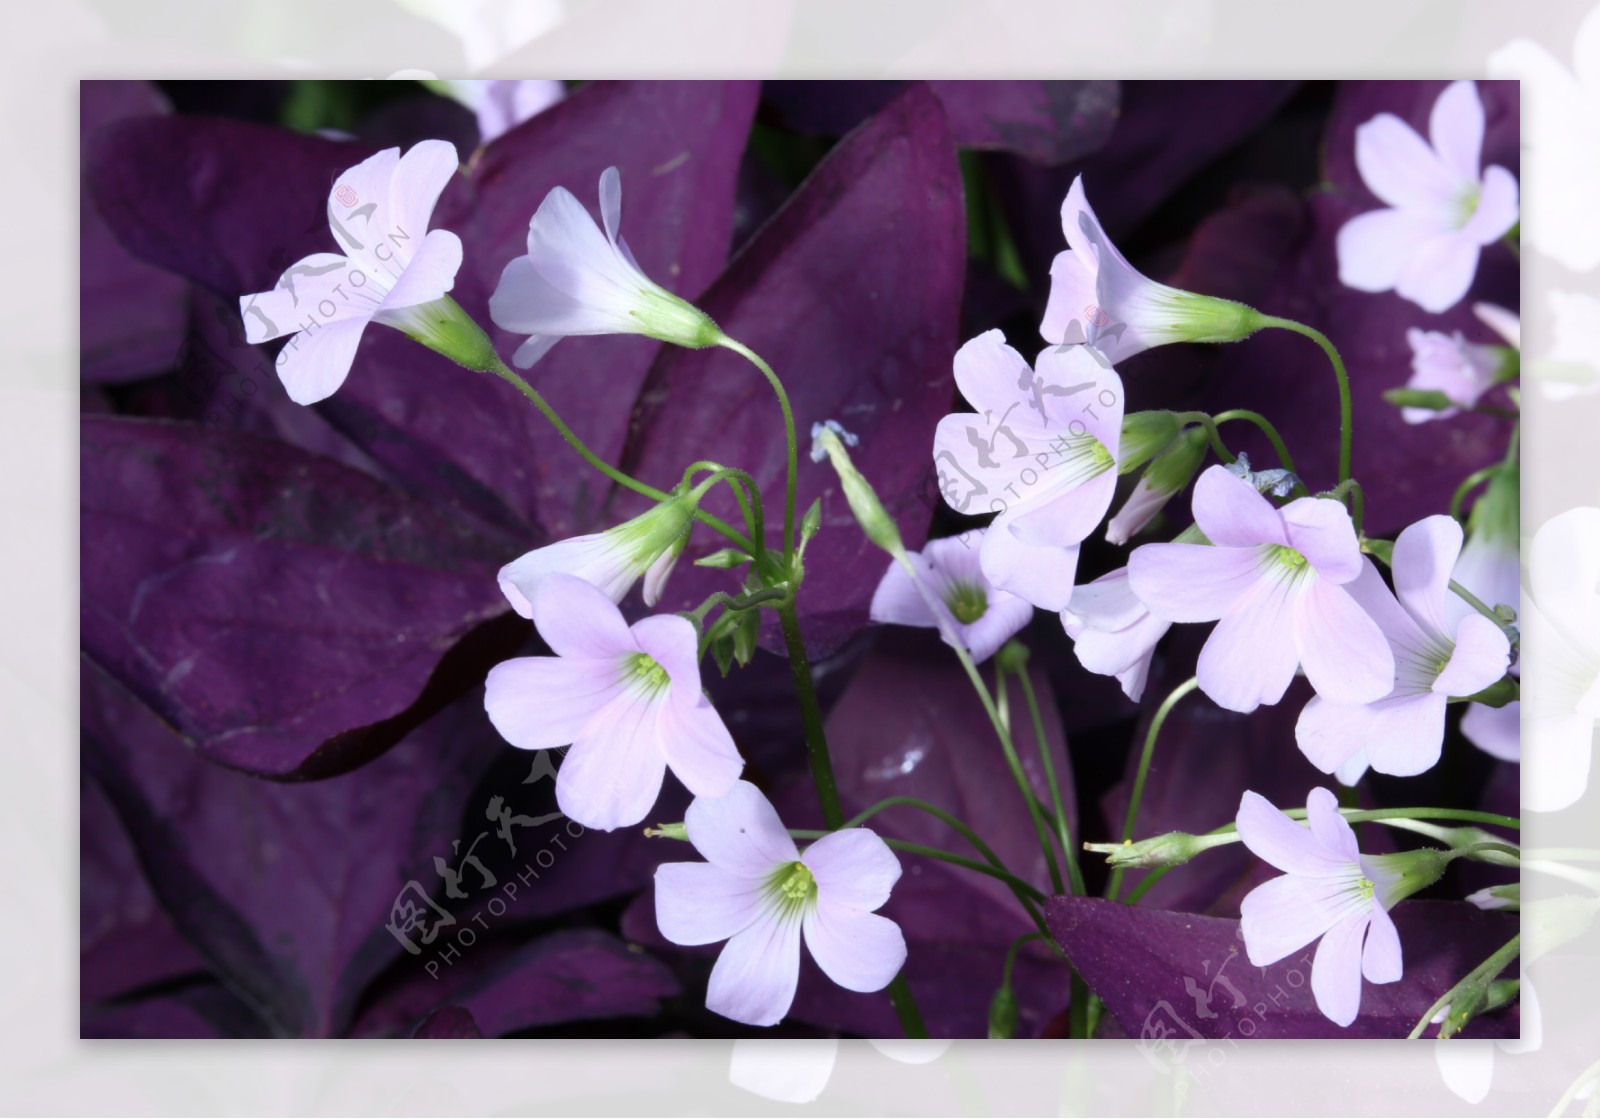 紫叶酢浆草